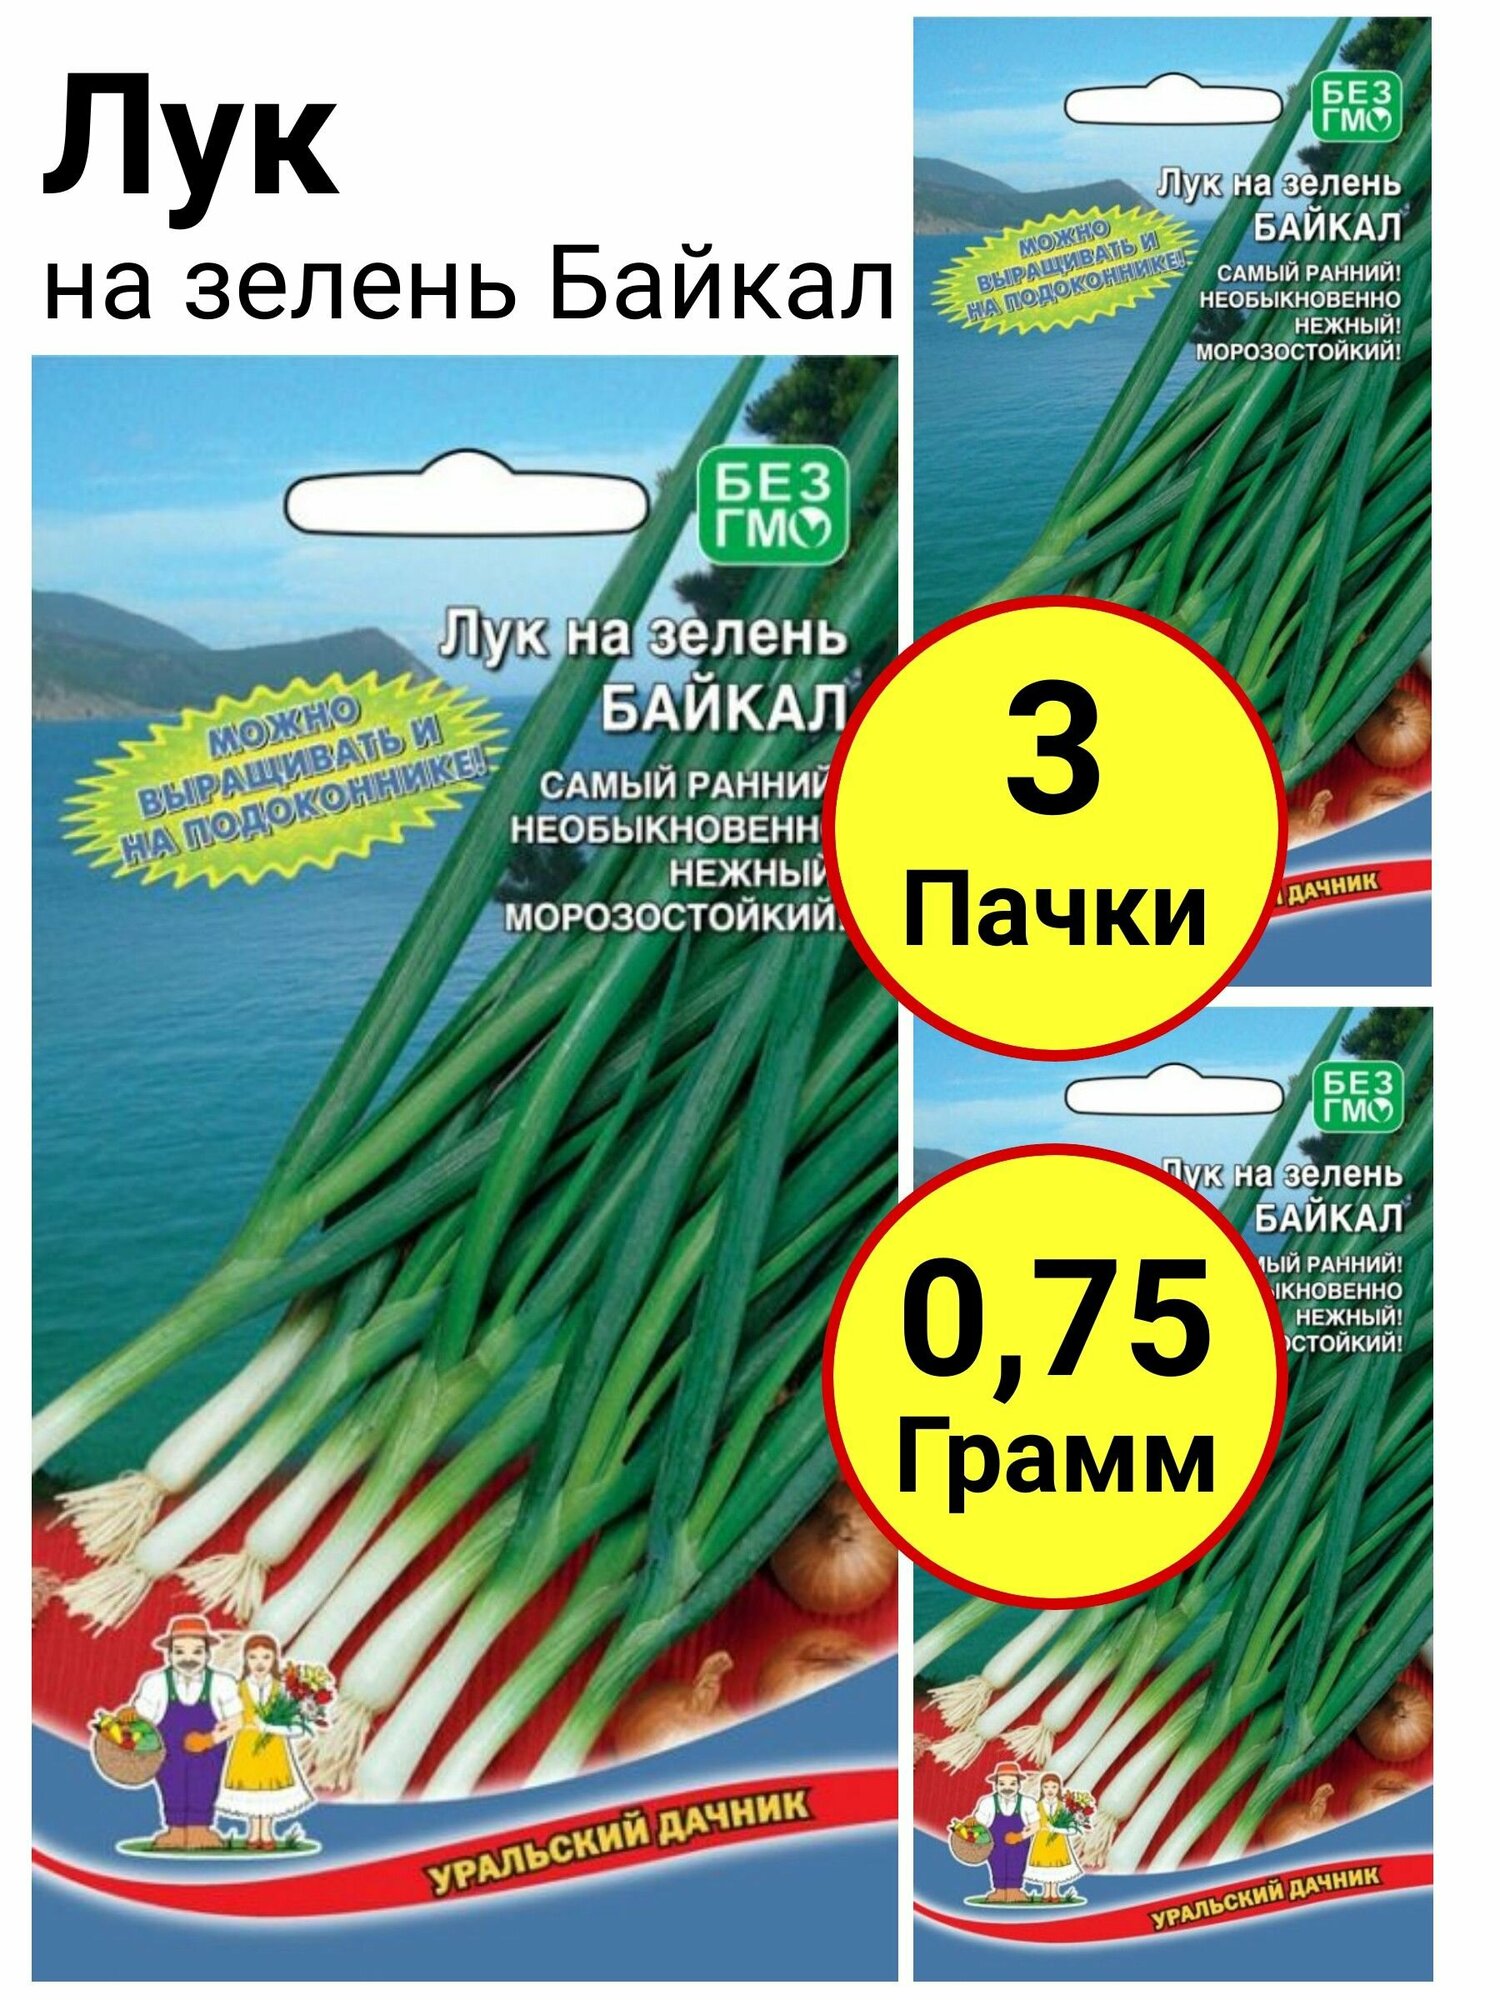 Лук на зелень Байкал 0,25 грамм, Уральский дачник - 3 пачки